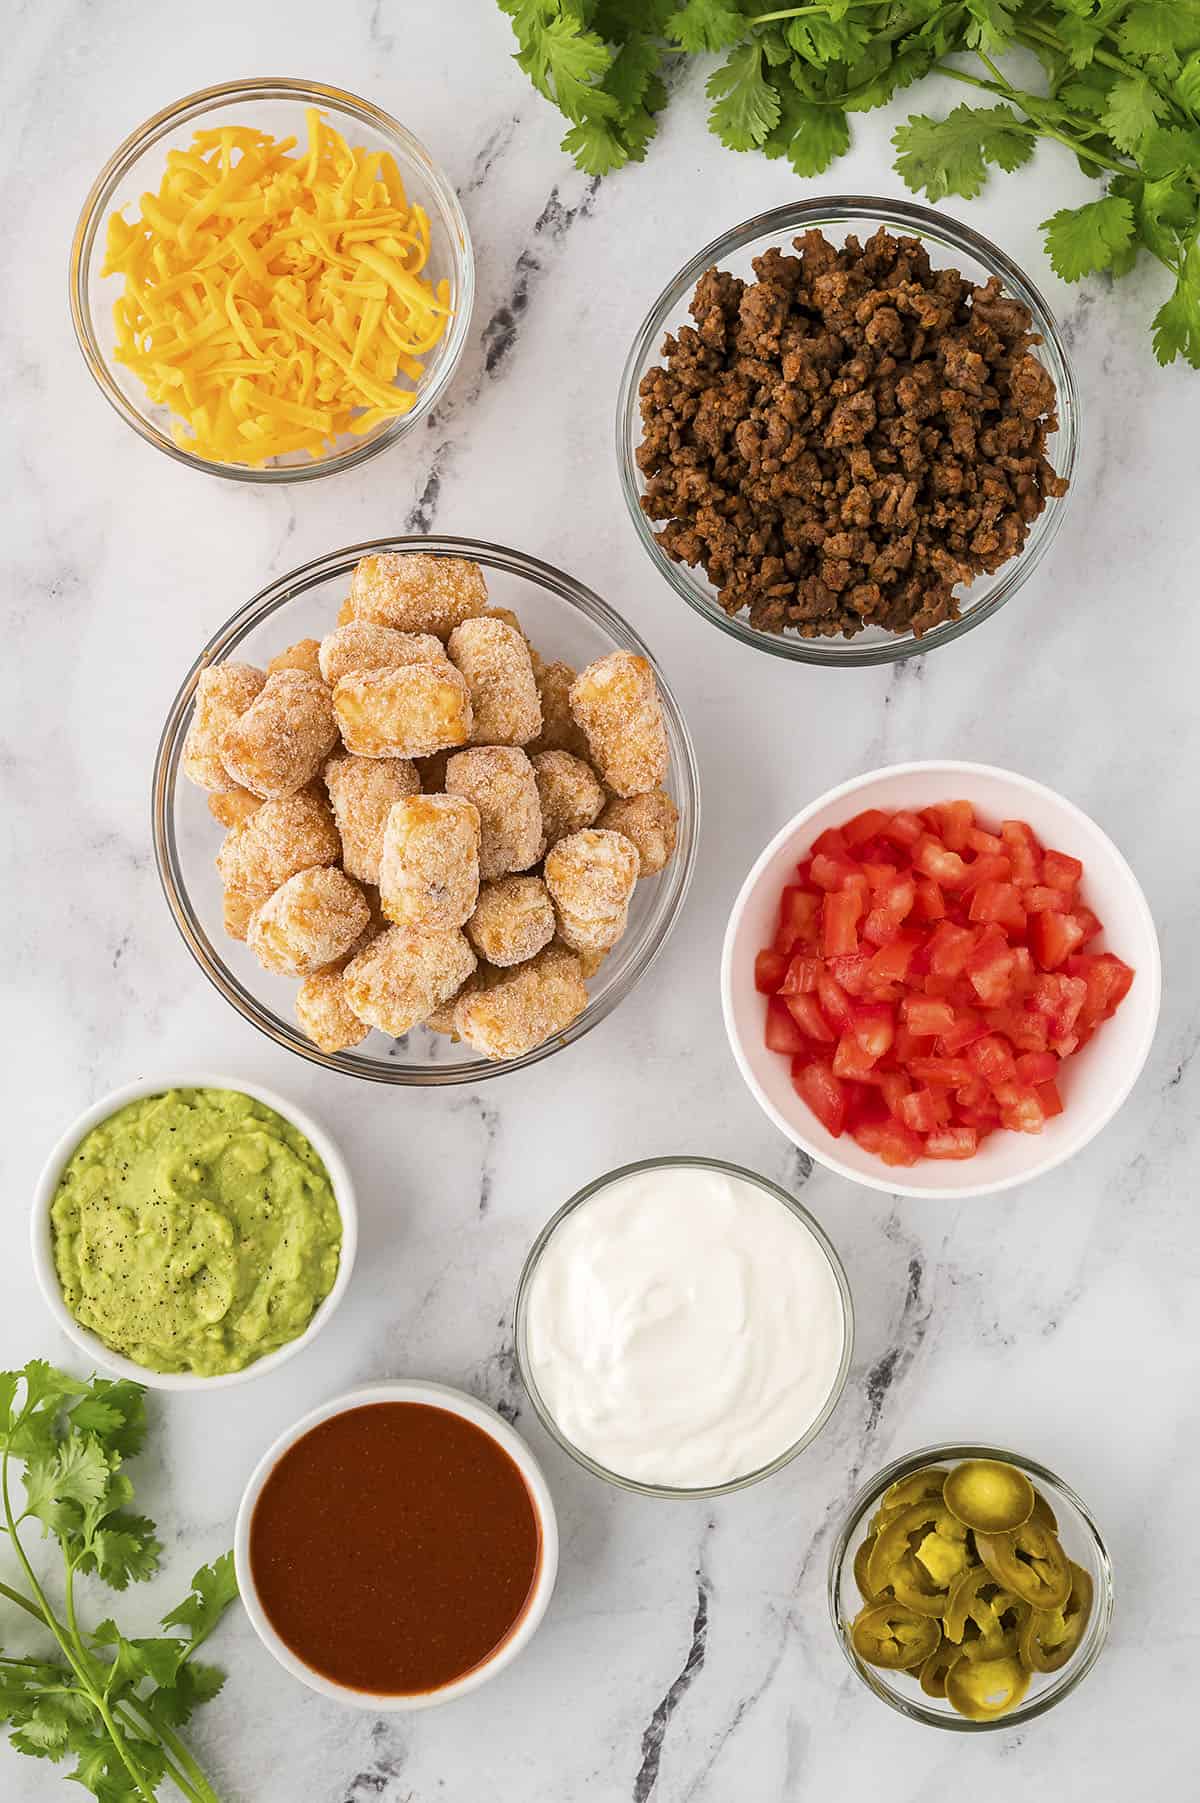 Ingredients for tater tot nachos.